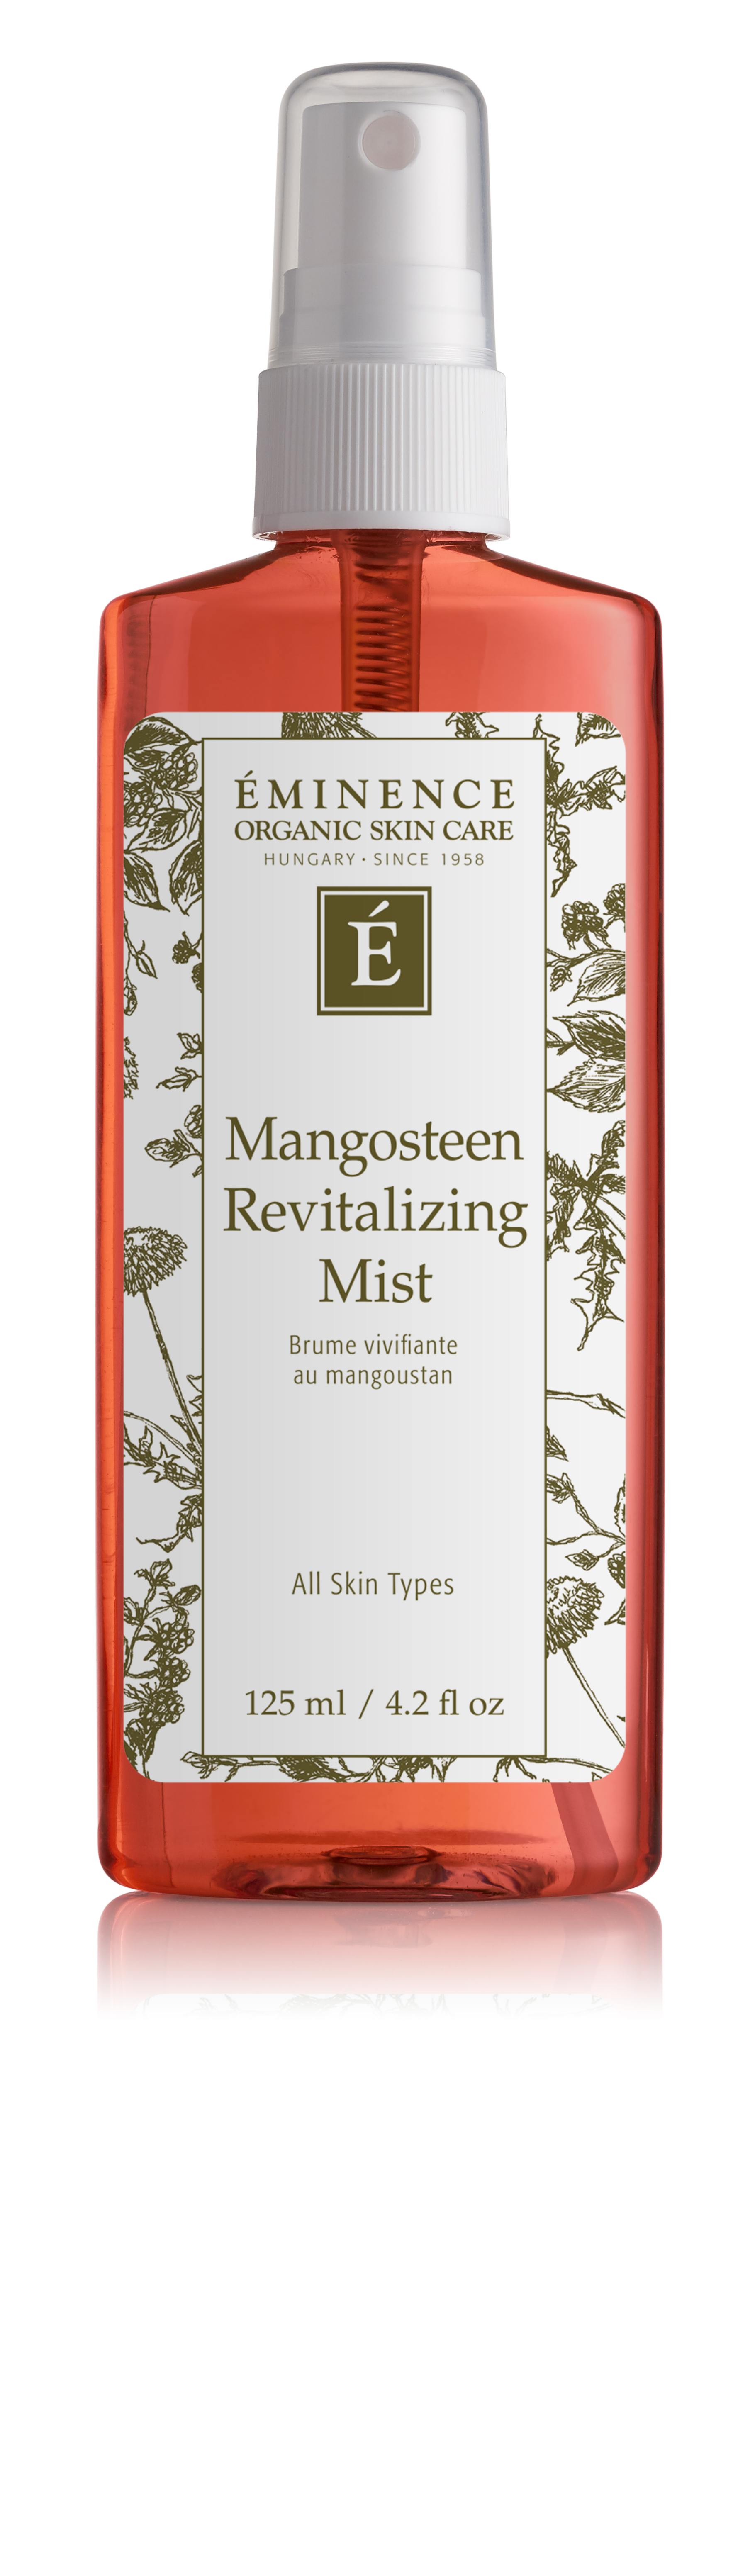 Eminence Mangosteen Revitalizing Mist